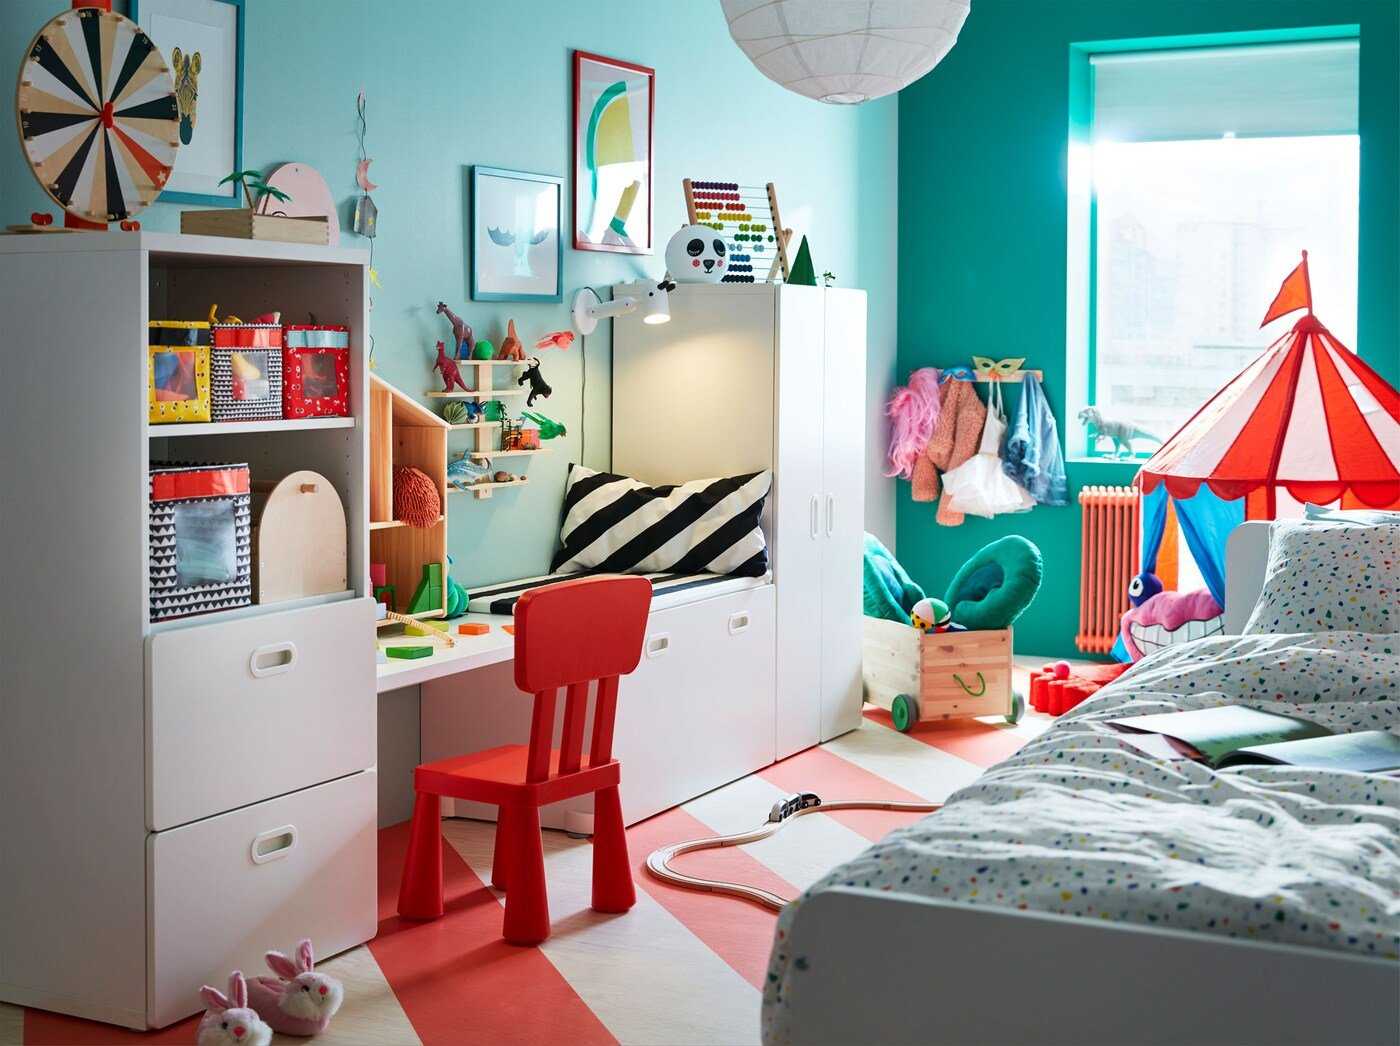 Детская комната от икеа - 100 фото новинок дизайна, а также идеального сочетания